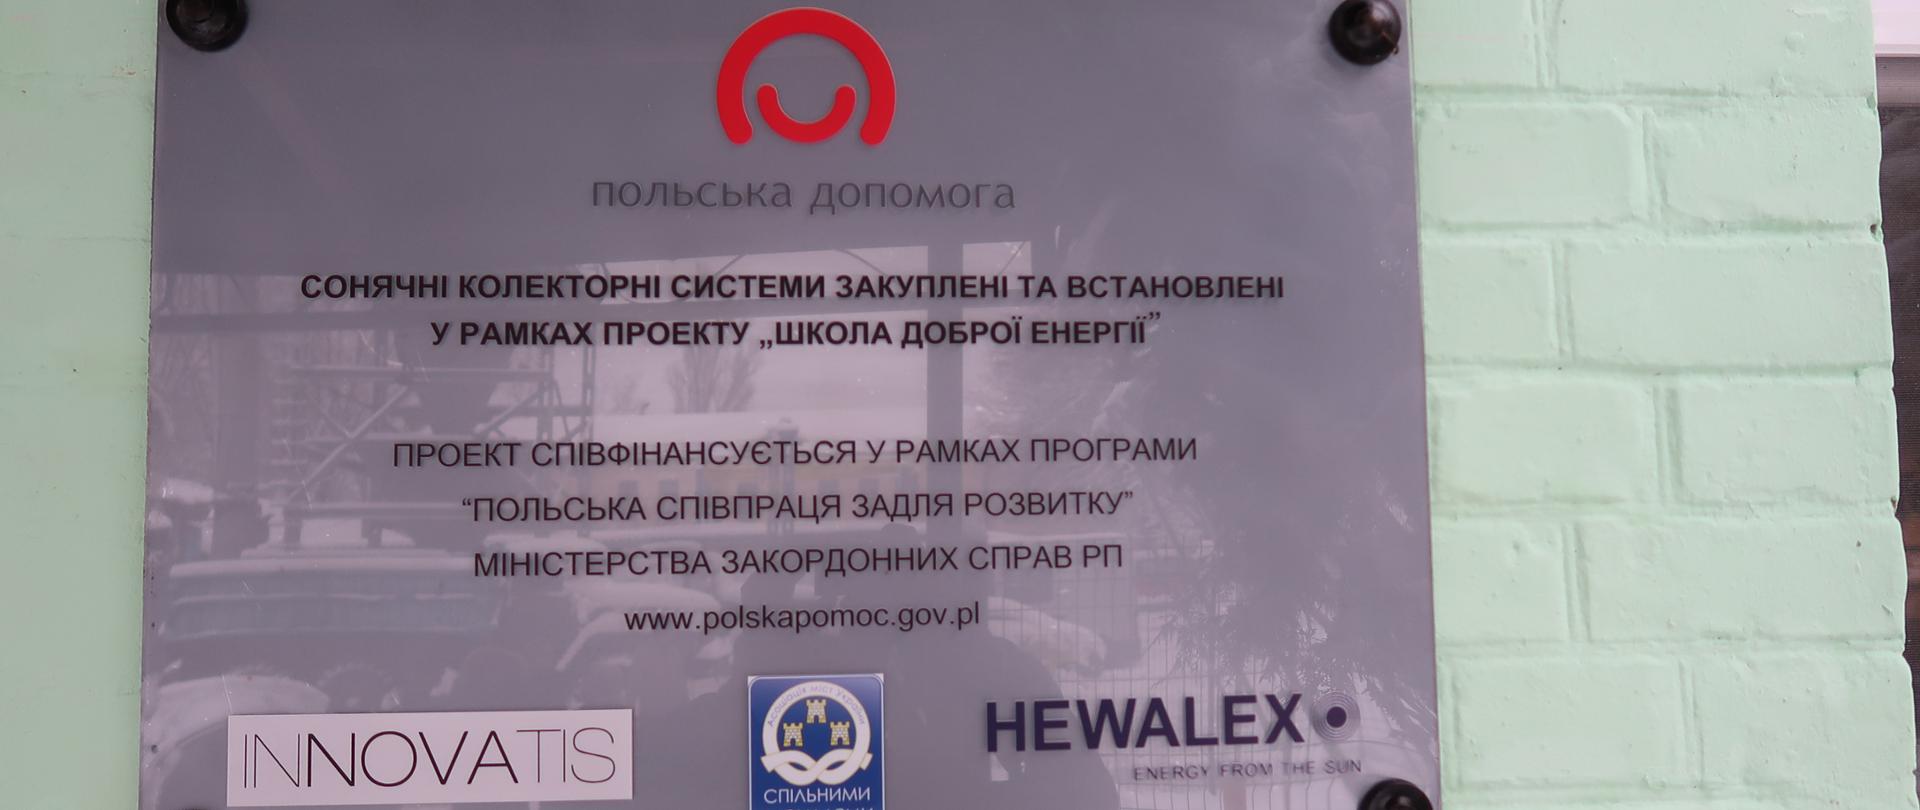 tablica z napisem w języku ukraińskim z logo Polska pomoc i Innovatis i Hewalex